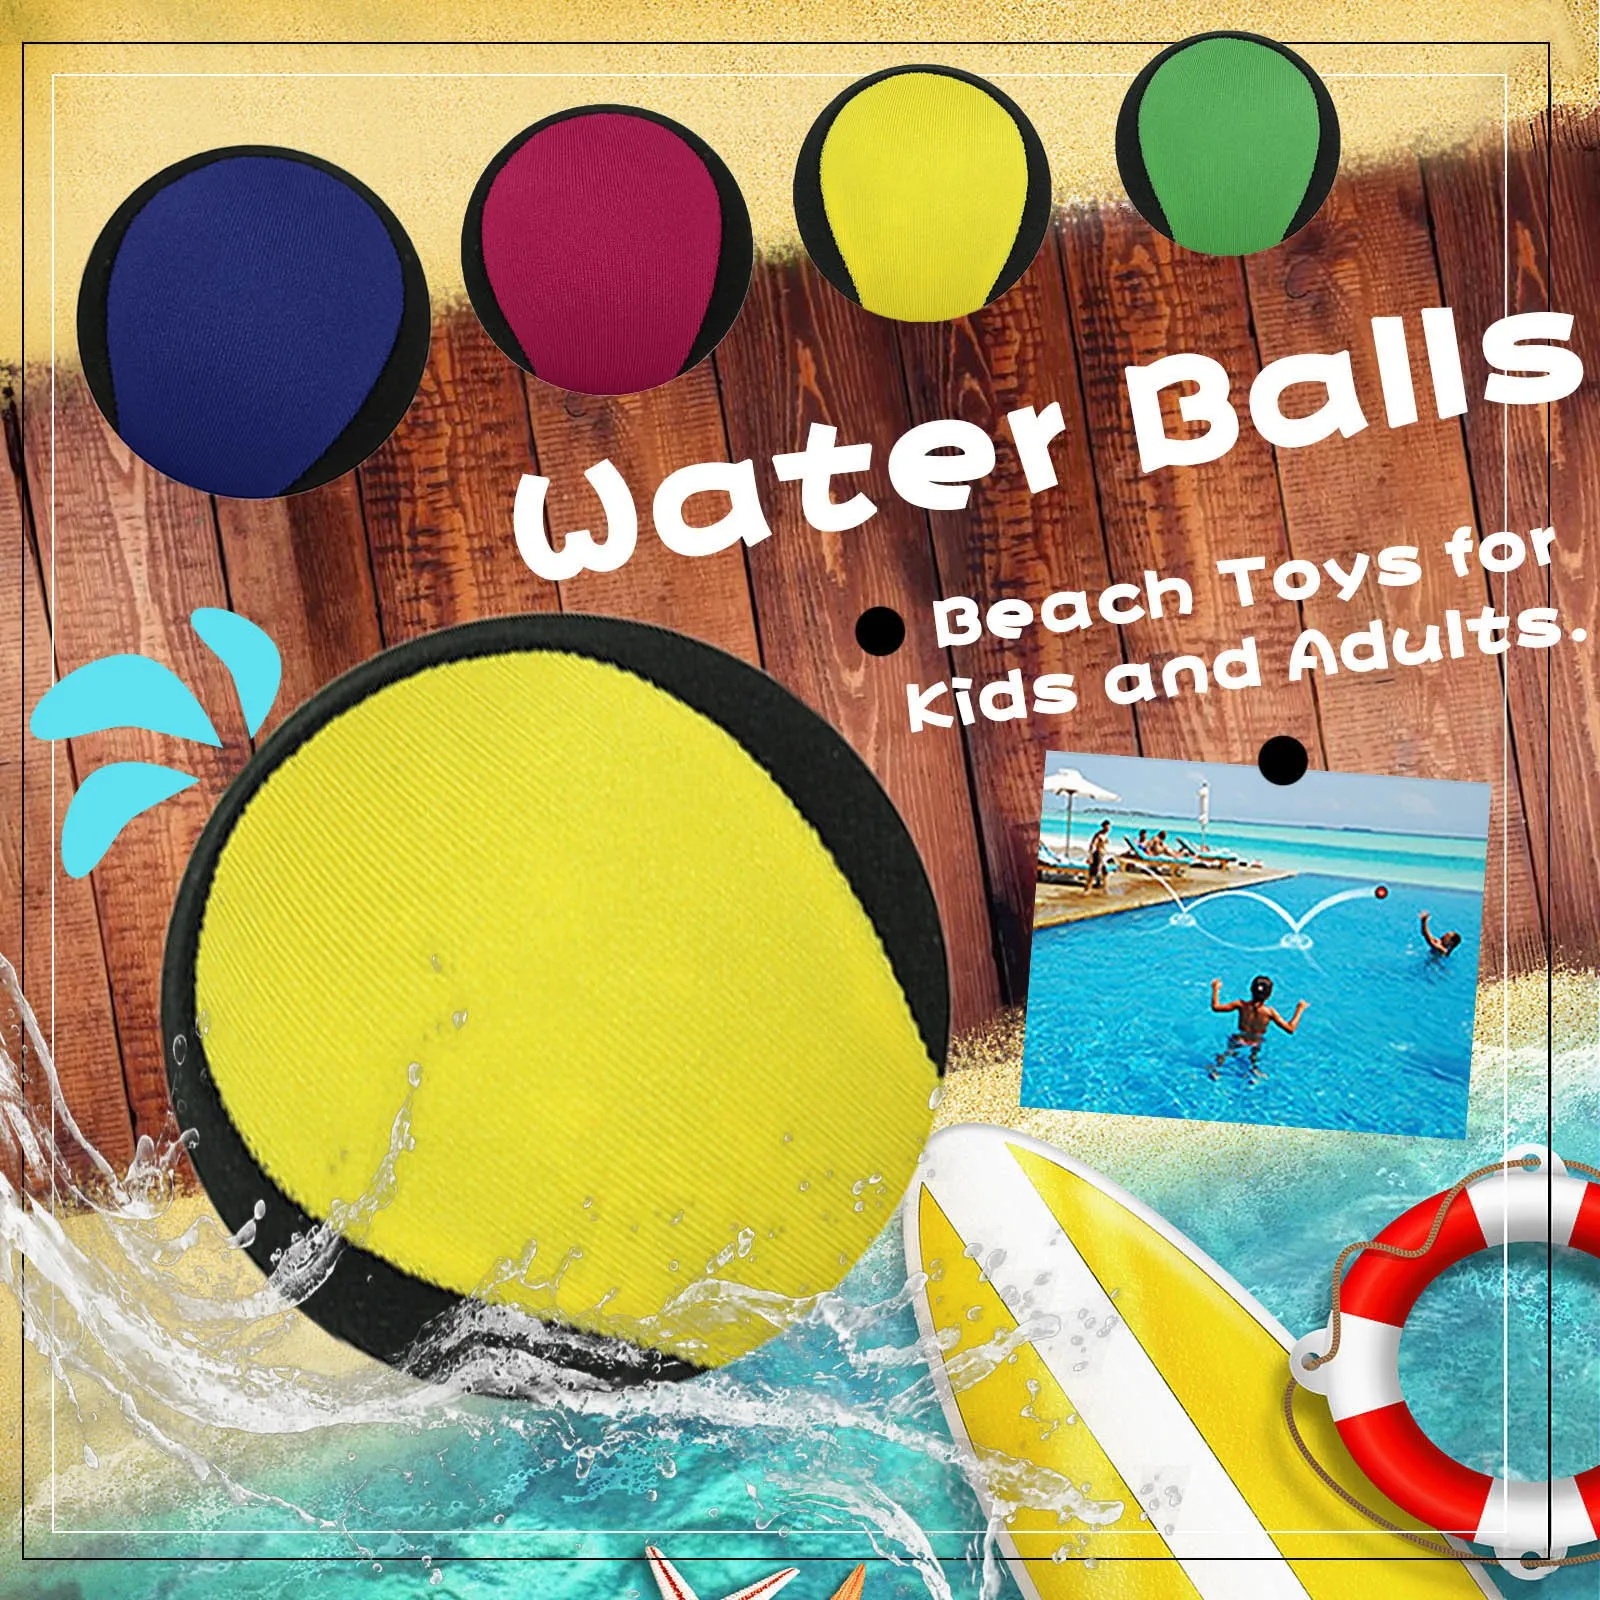 Les balles d'eau rebondissent sur les jouets de plage de balle de piscine pour les enfants adultes jouet ballons de plage ColorBalls Outdoor